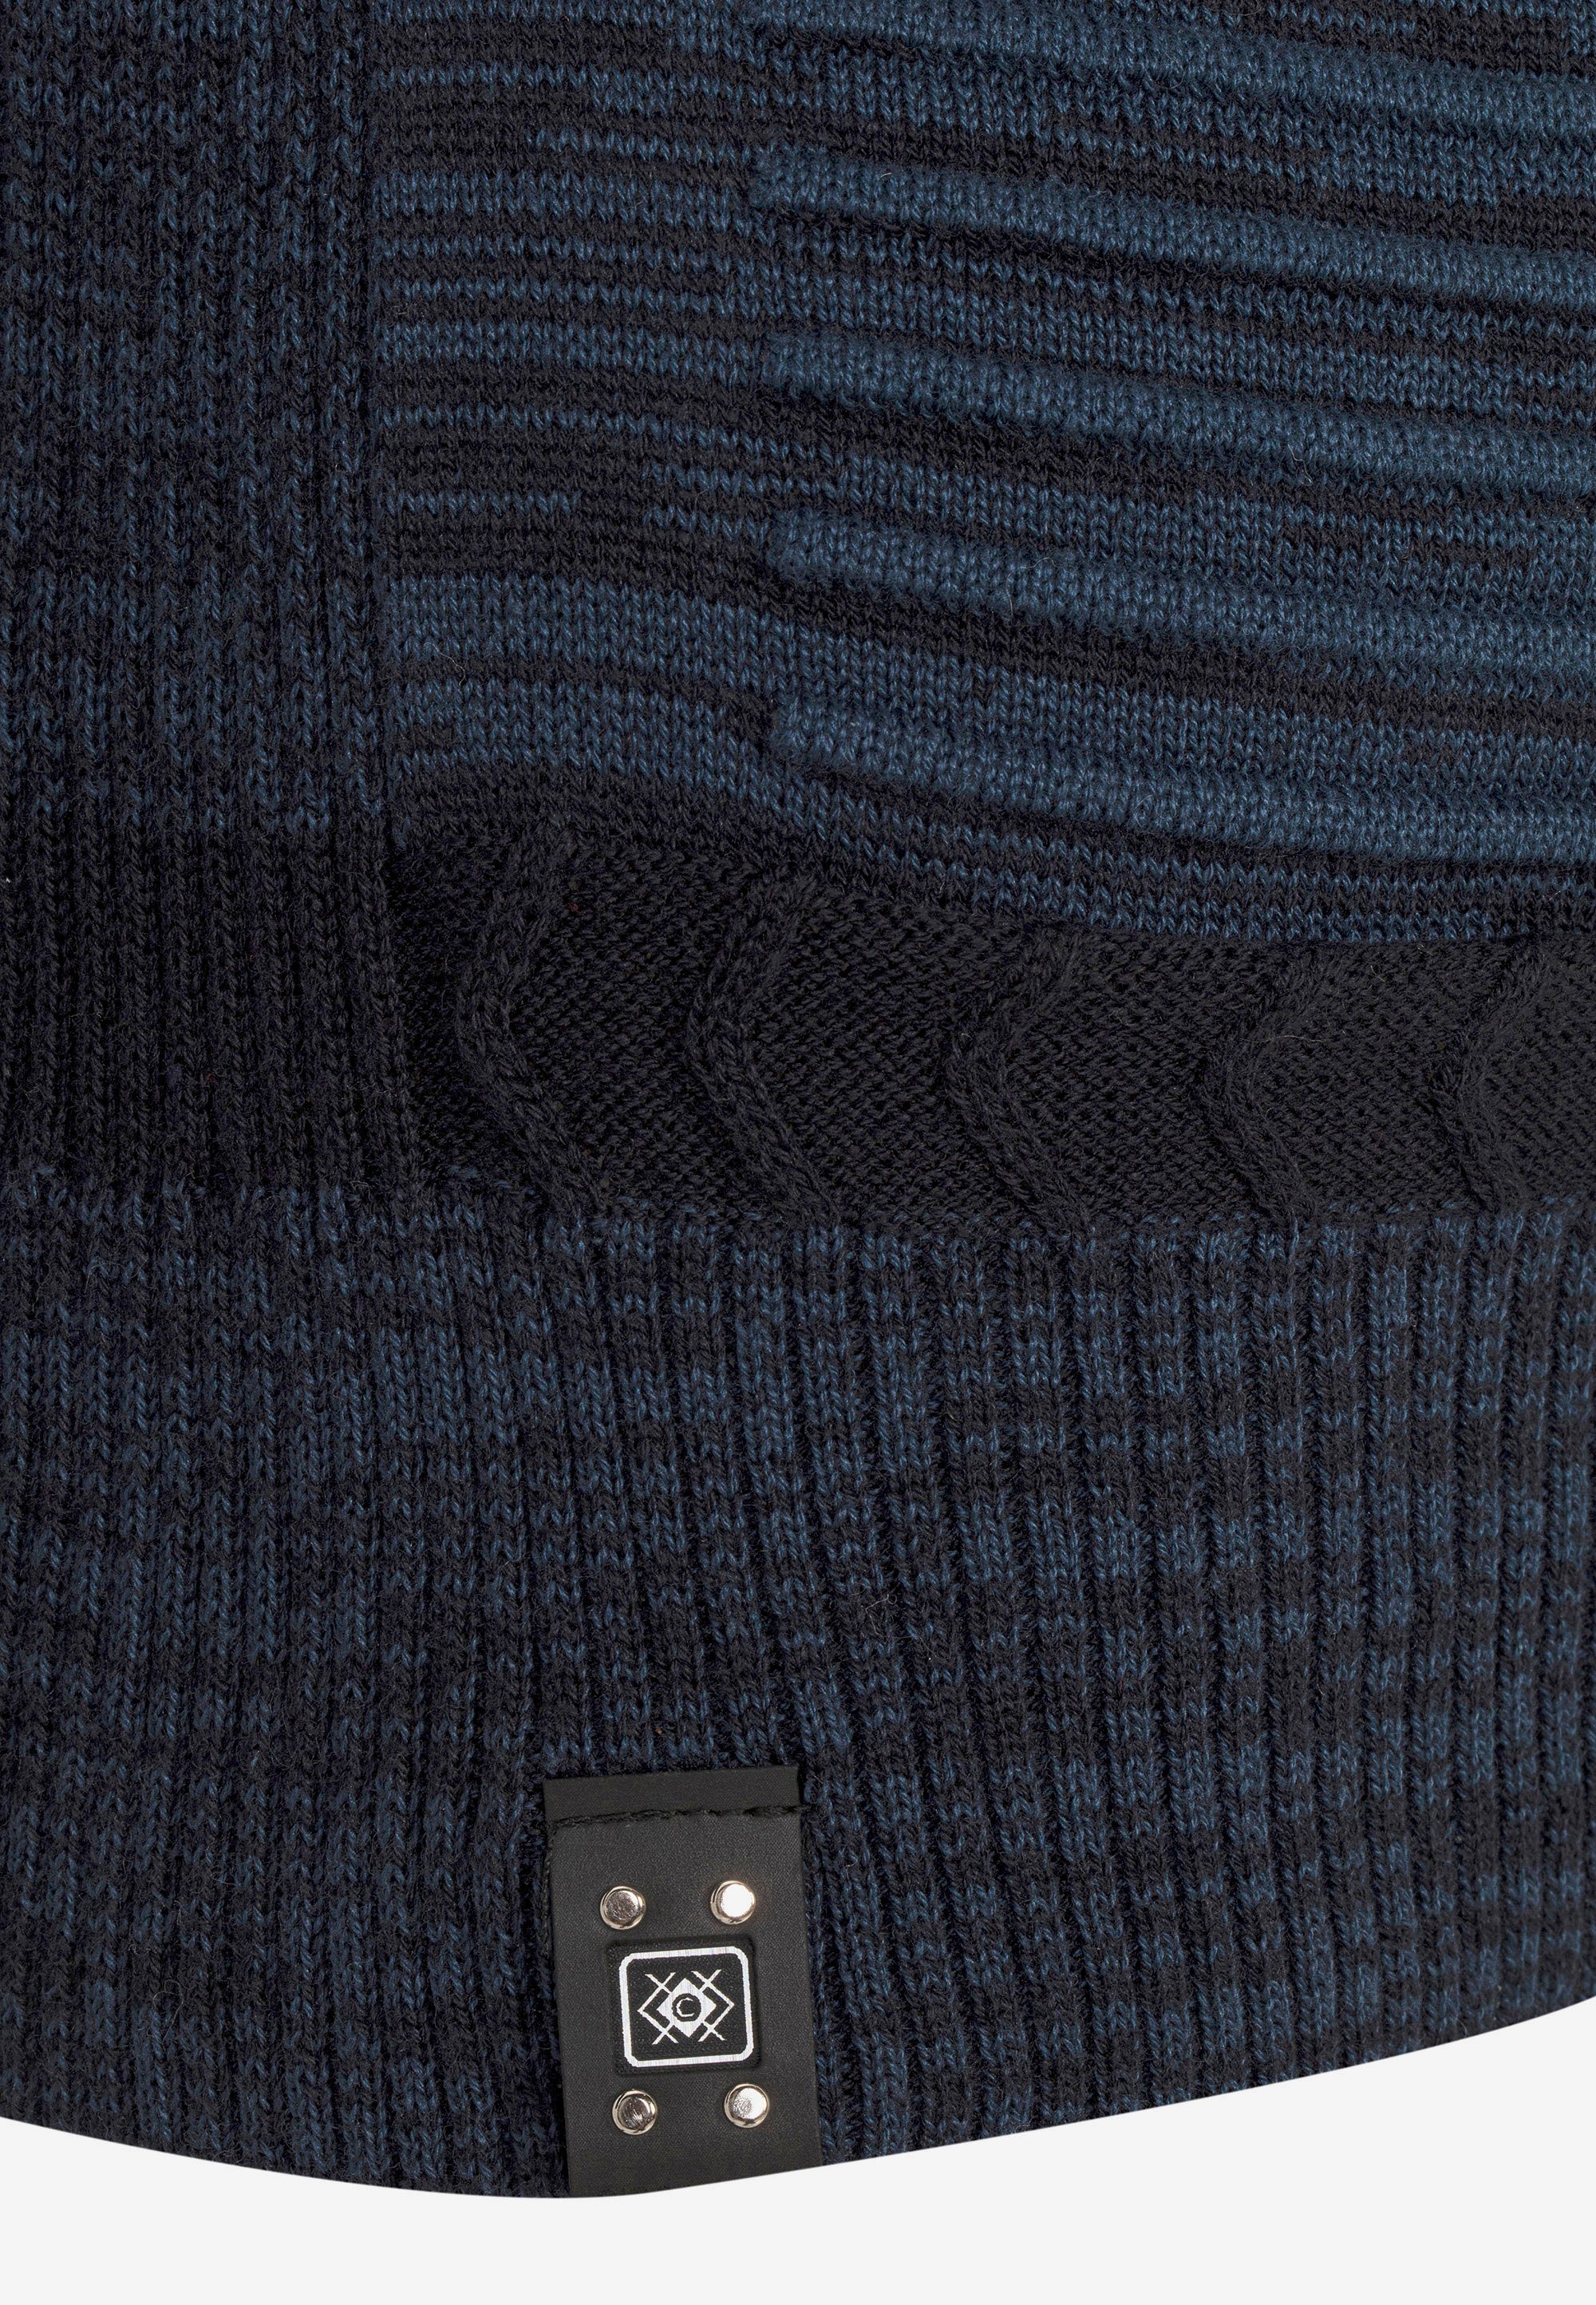 Cipo & Baxx Strickpullover mit dunkelblau-blau Umschlagkragen modischem